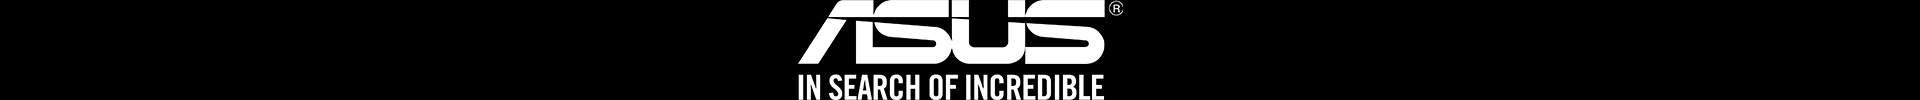 ASUS BrandHub Refresh 03.19.Asus Logo Black